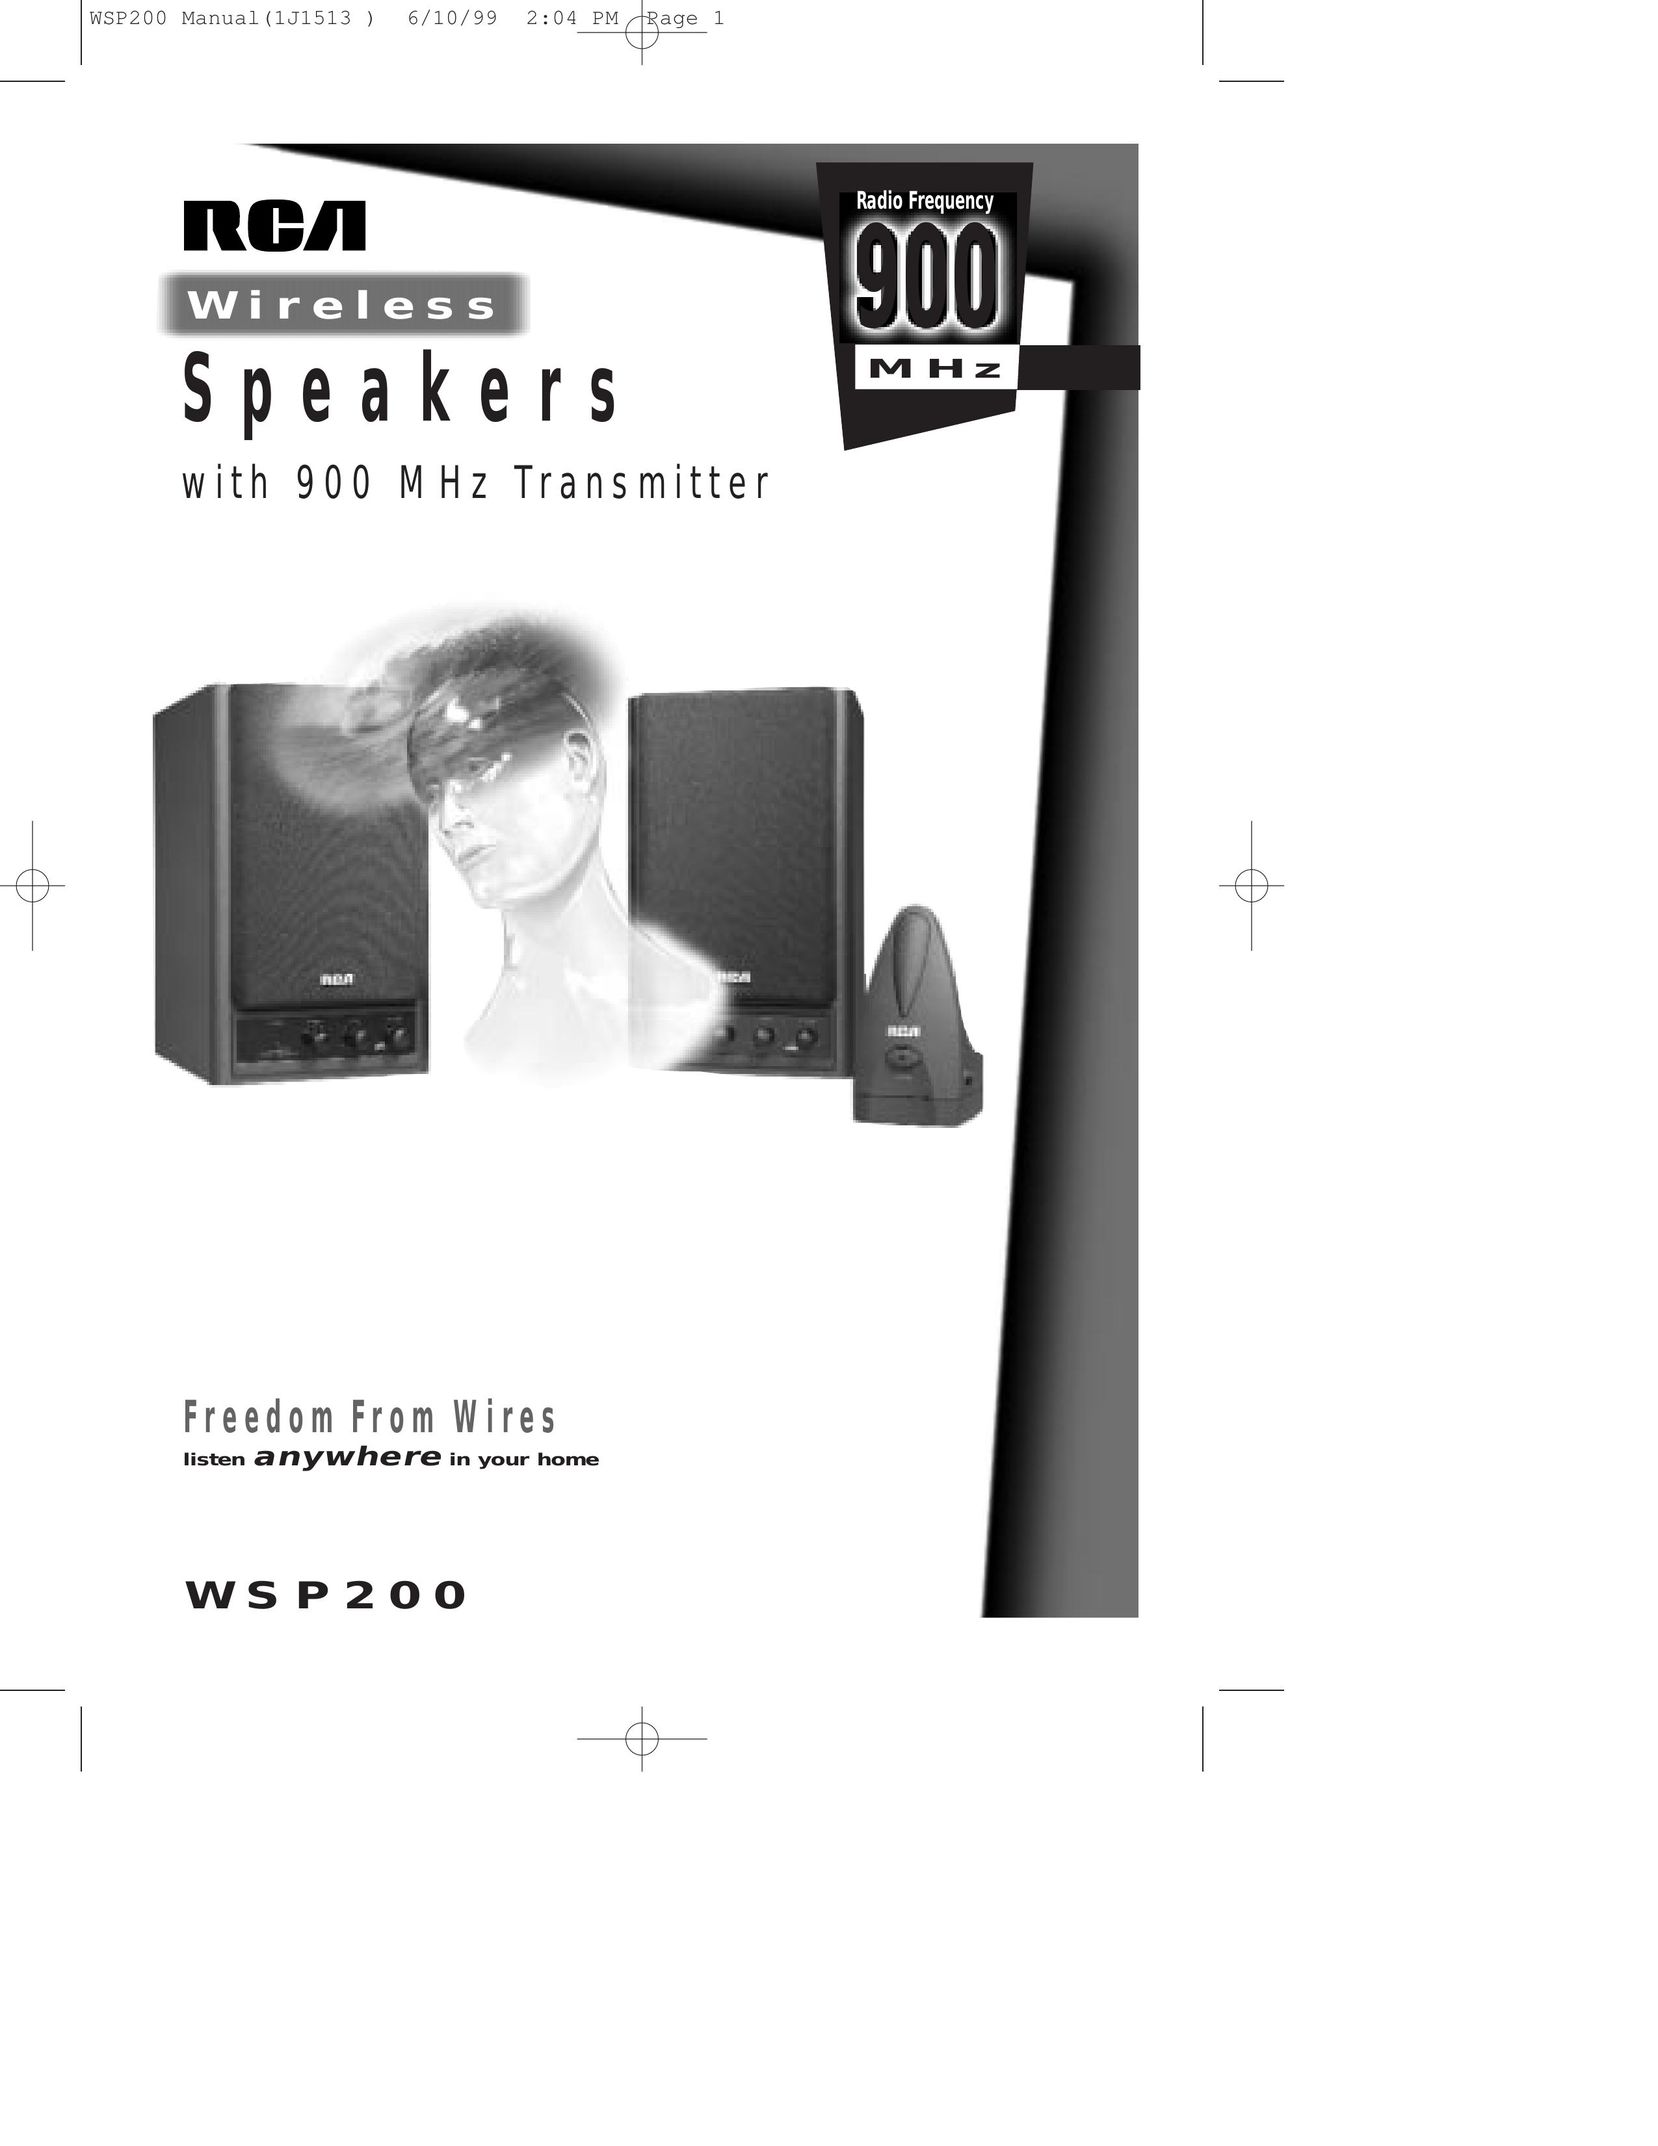 Samsung WSP200 Speaker System User Manual